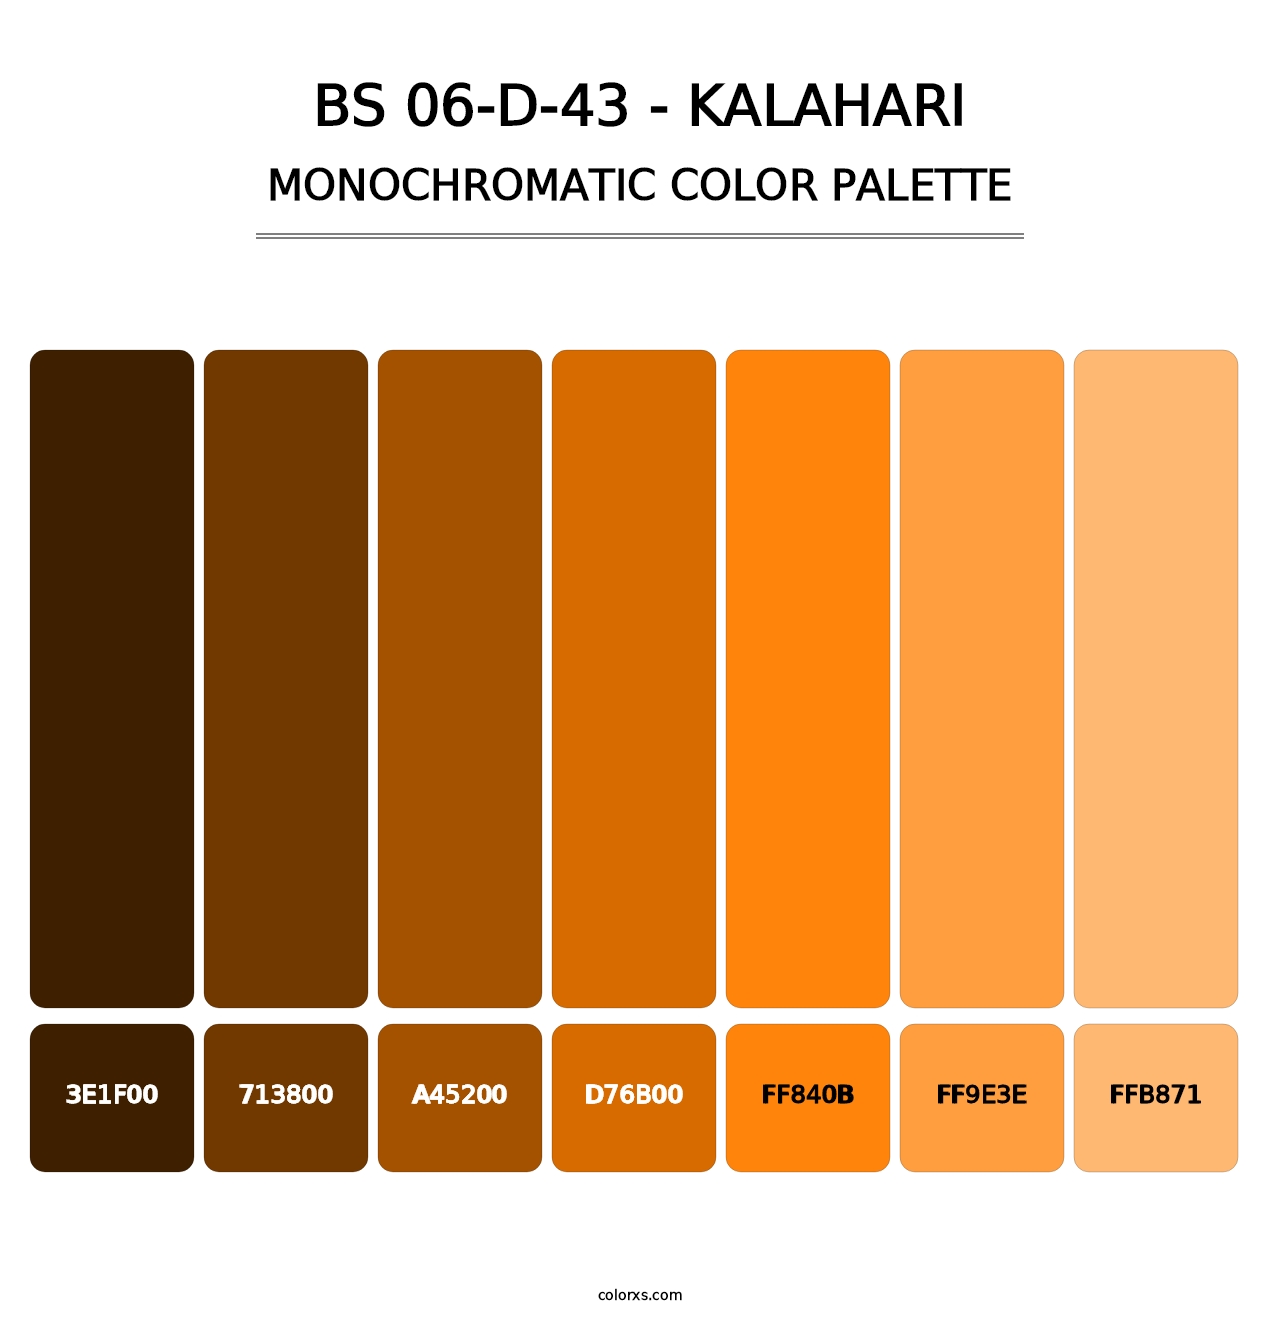 BS 06-D-43 - Kalahari - Monochromatic Color Palette